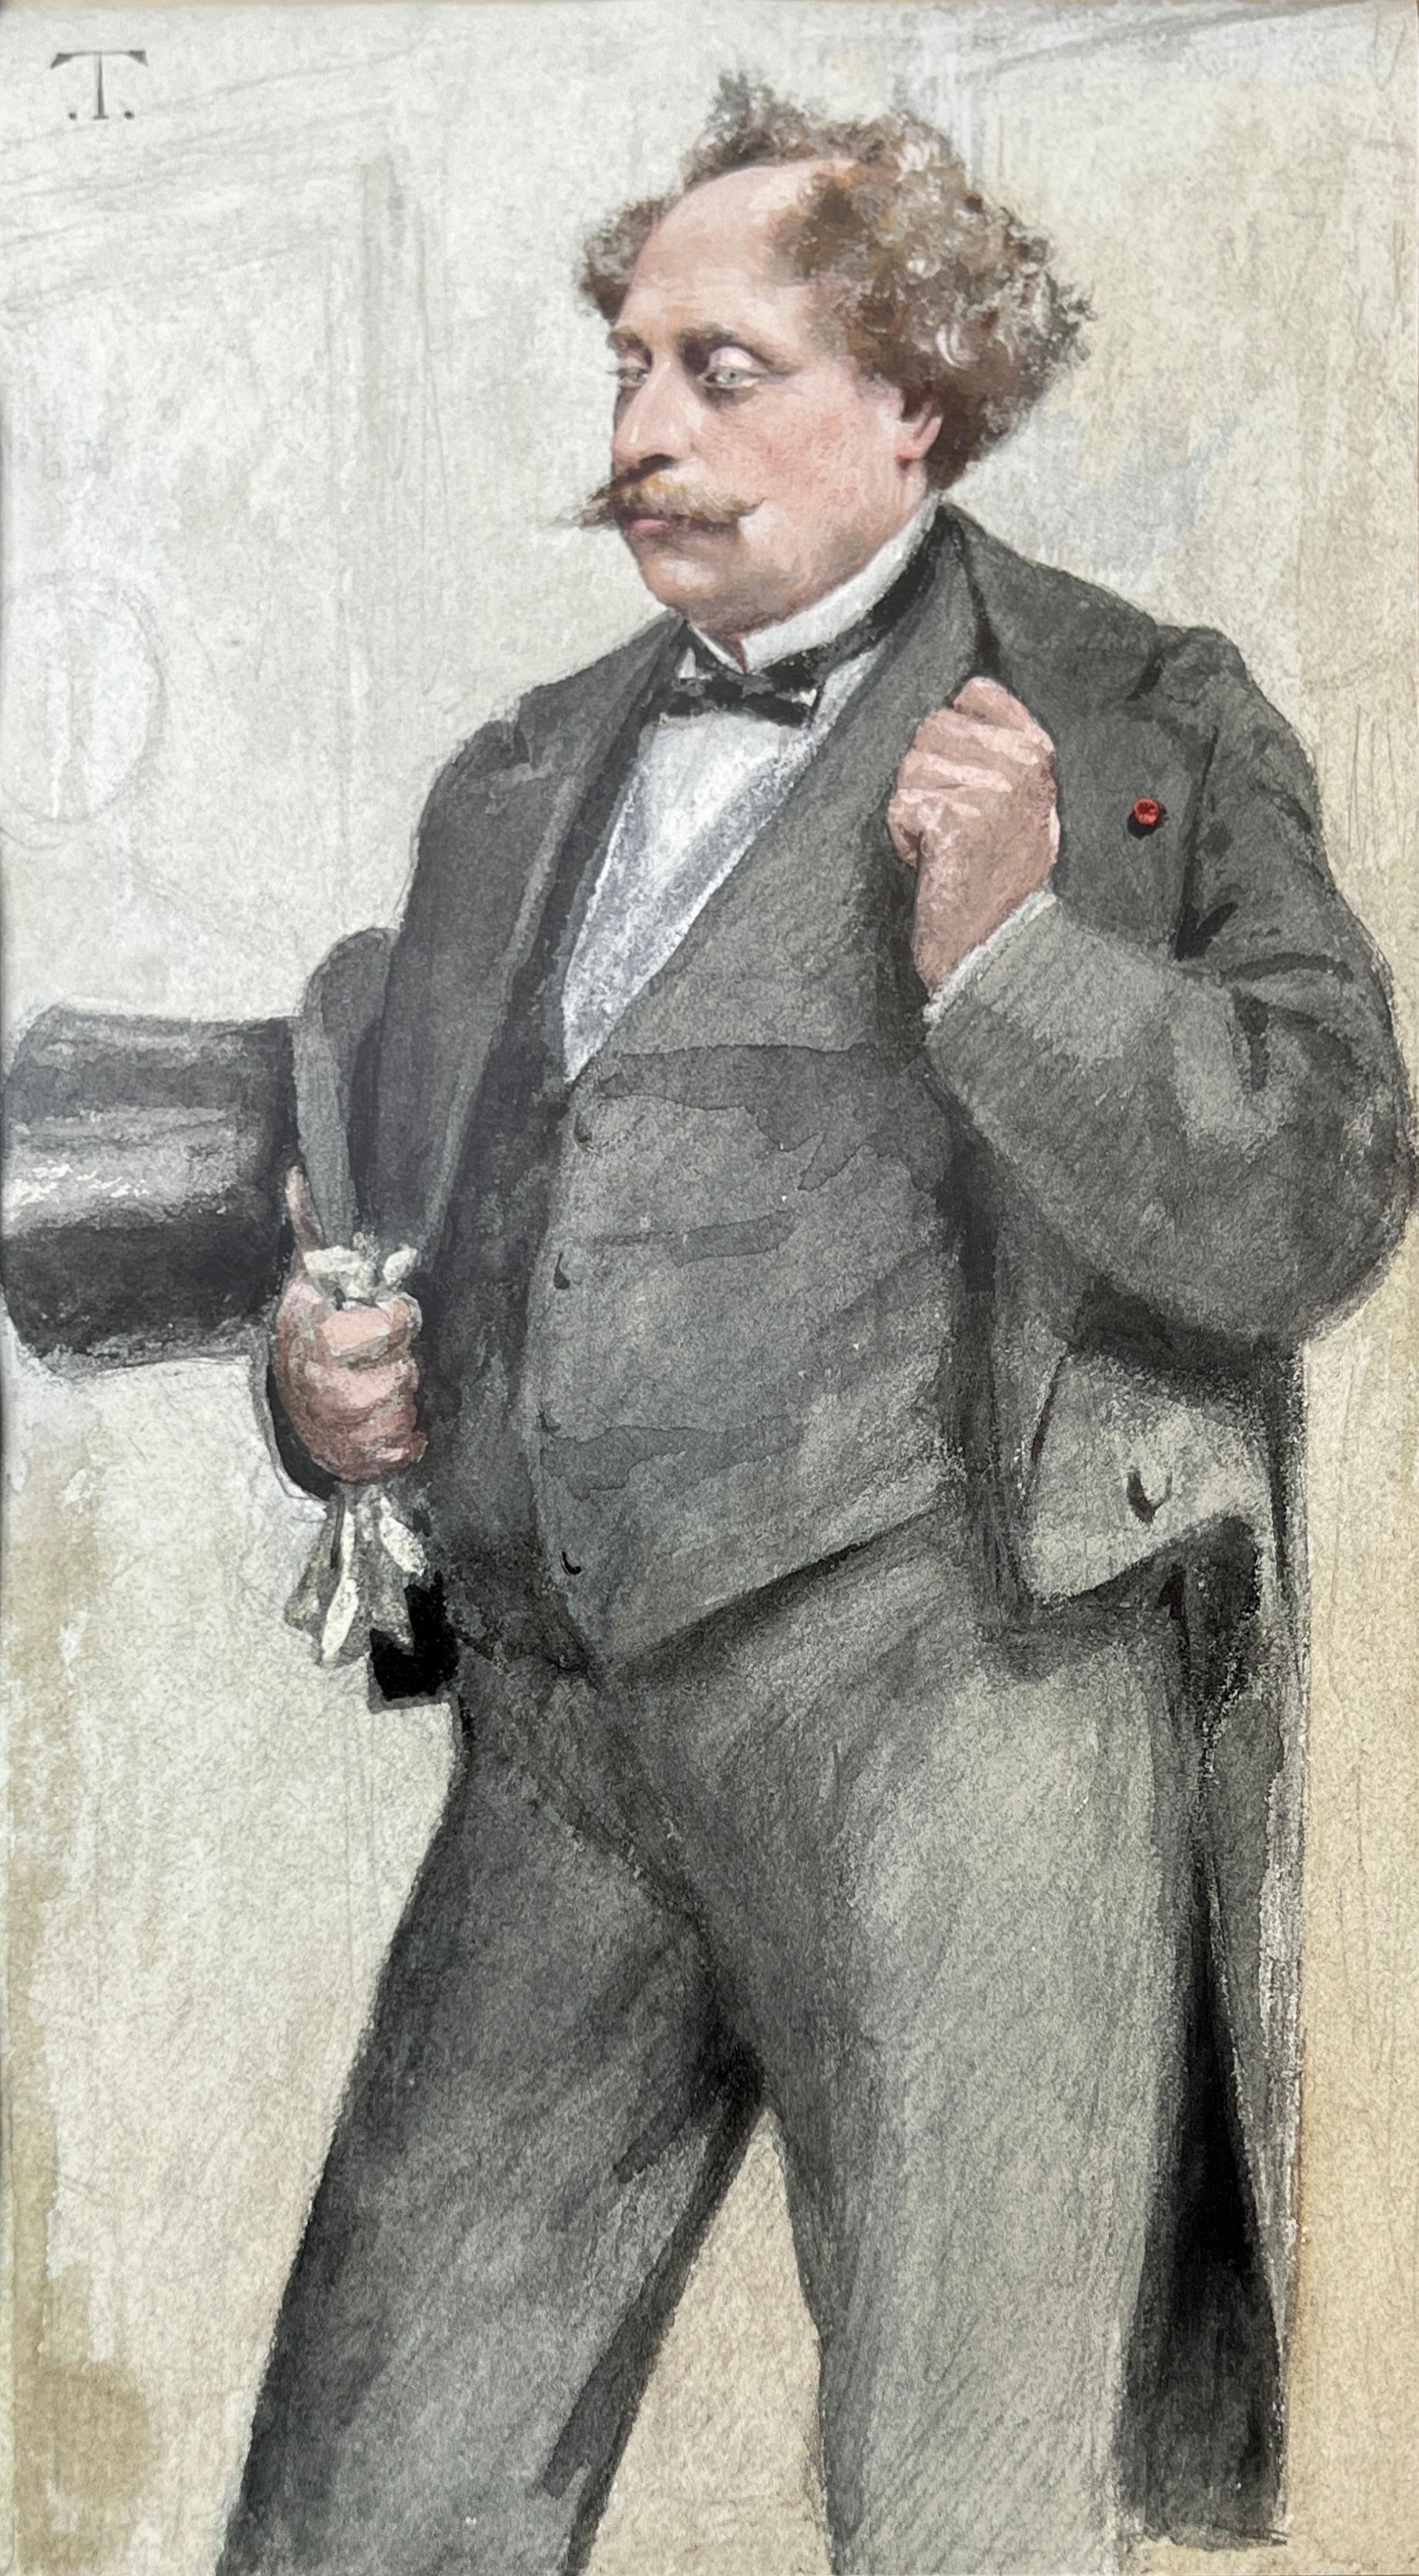 Notre portrait d'Alexandre Dumas fils (1824-1895) au crayon et à l'aquarelle rehaussé de blanc par Theobald Chartran (1849-1907) est l'œuvre originale figurant dans l'édition du 27 décembre 1879 de Vanity Fair. Monté ici sous un ancien passe-partout